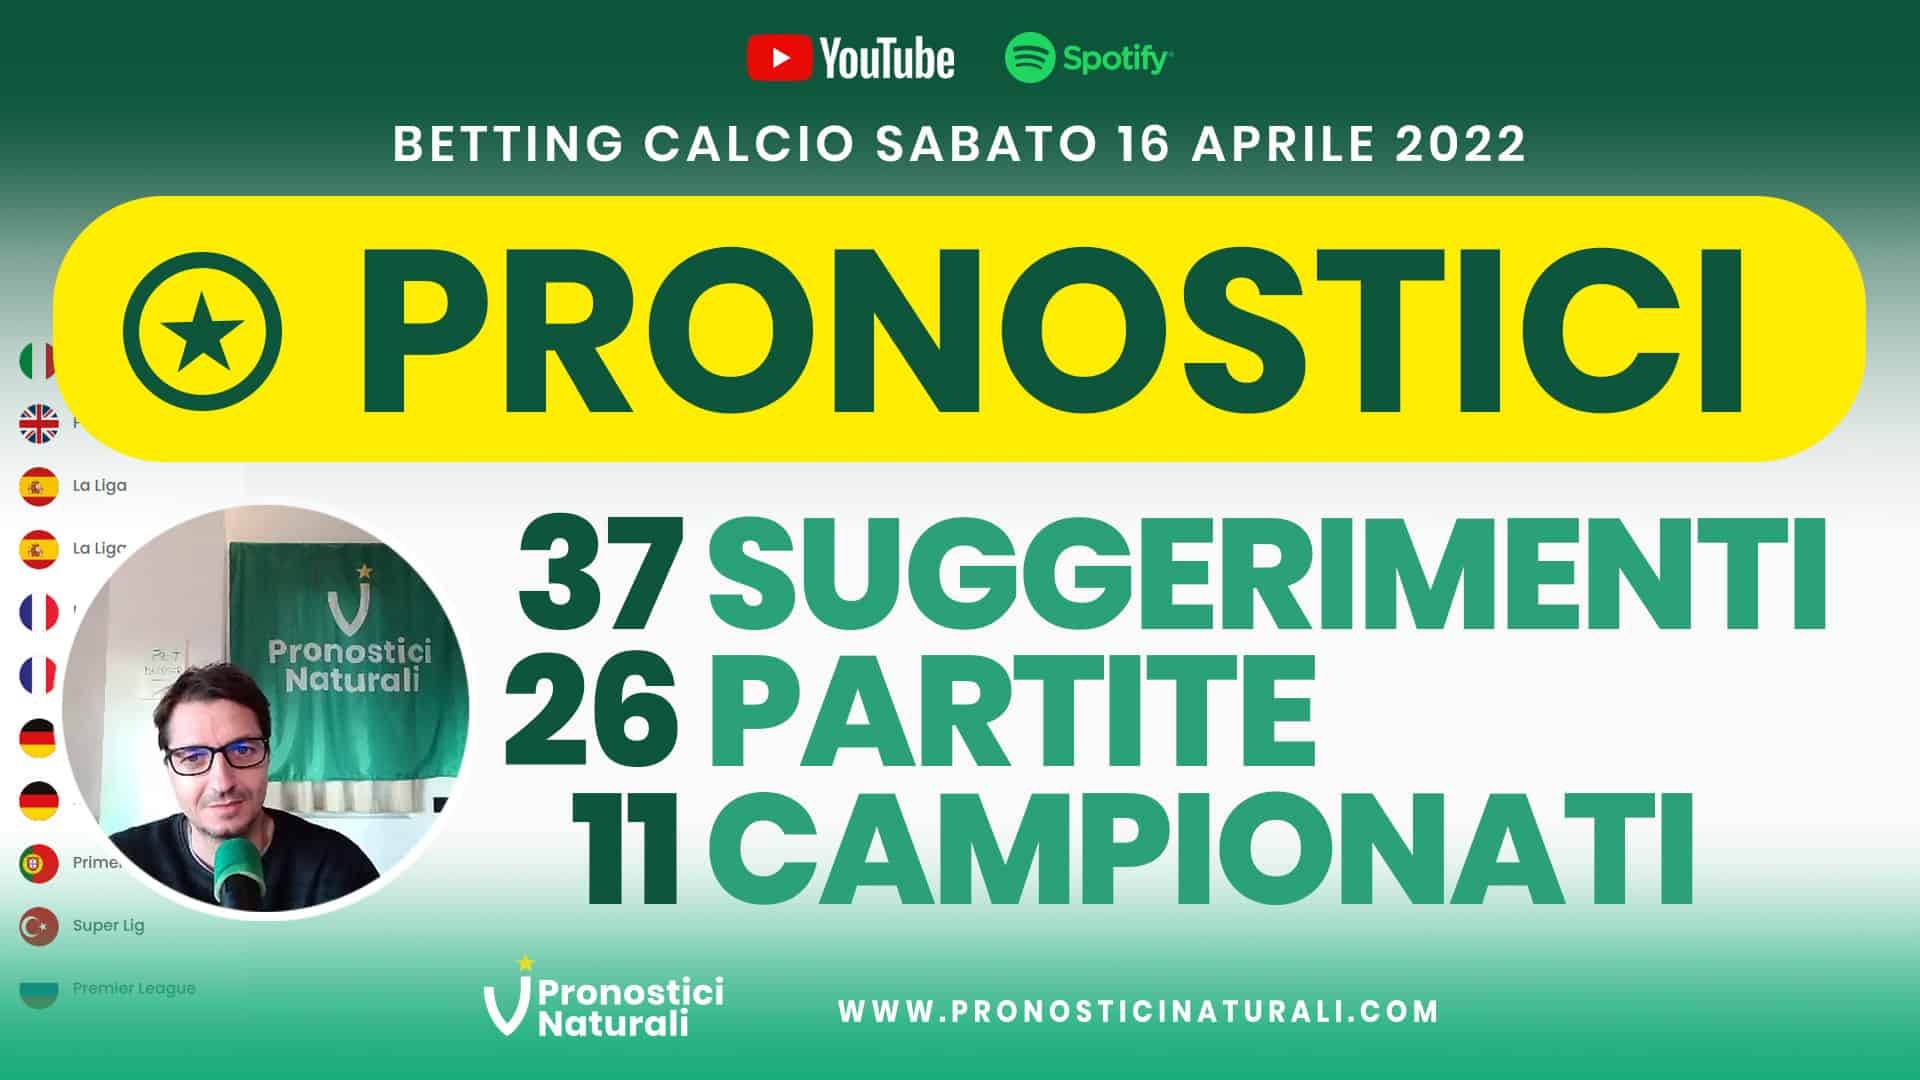 Pronostici Naturali Video Analisi Scommesse Betting Calcio Analisi Pre Partite Sabato 16 Aprile 2022